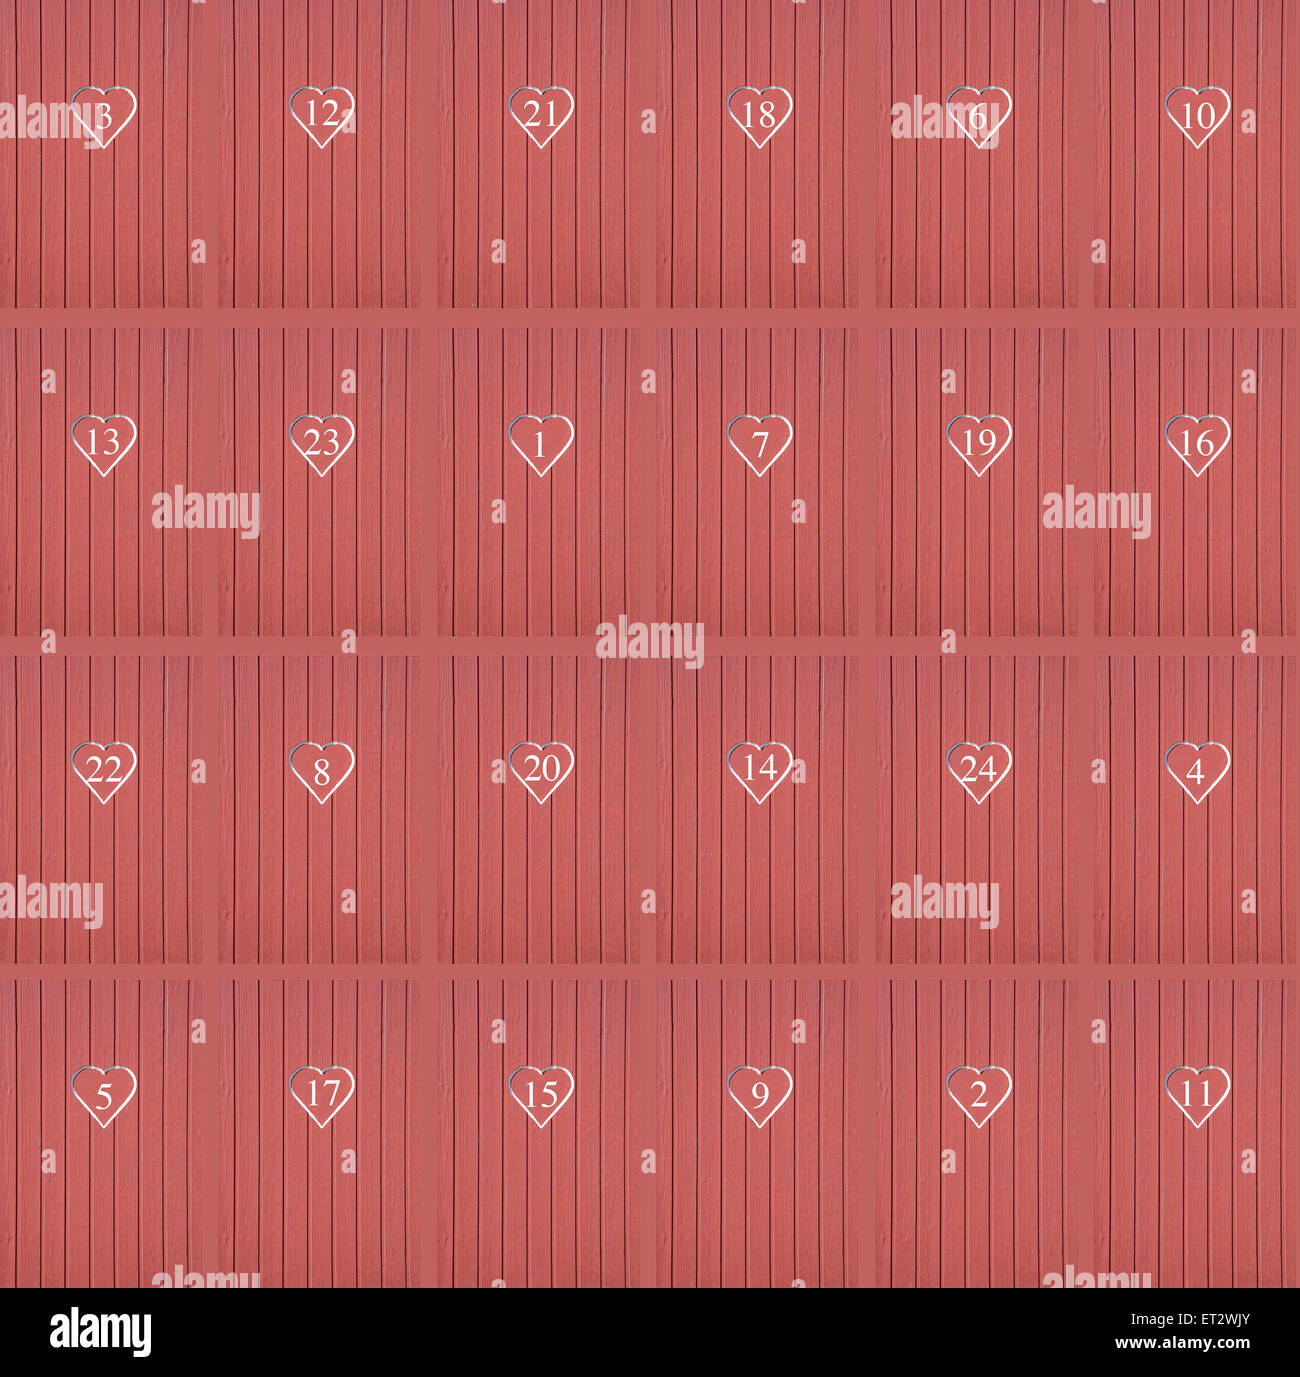 Rote Herzen Kalender Türen. Holz Wand mit roten Herzen nummeriert 1-24 in keiner Reihenfolge für Weihnachten Kalenderhintergrund oder Hintergrund. Stockfoto